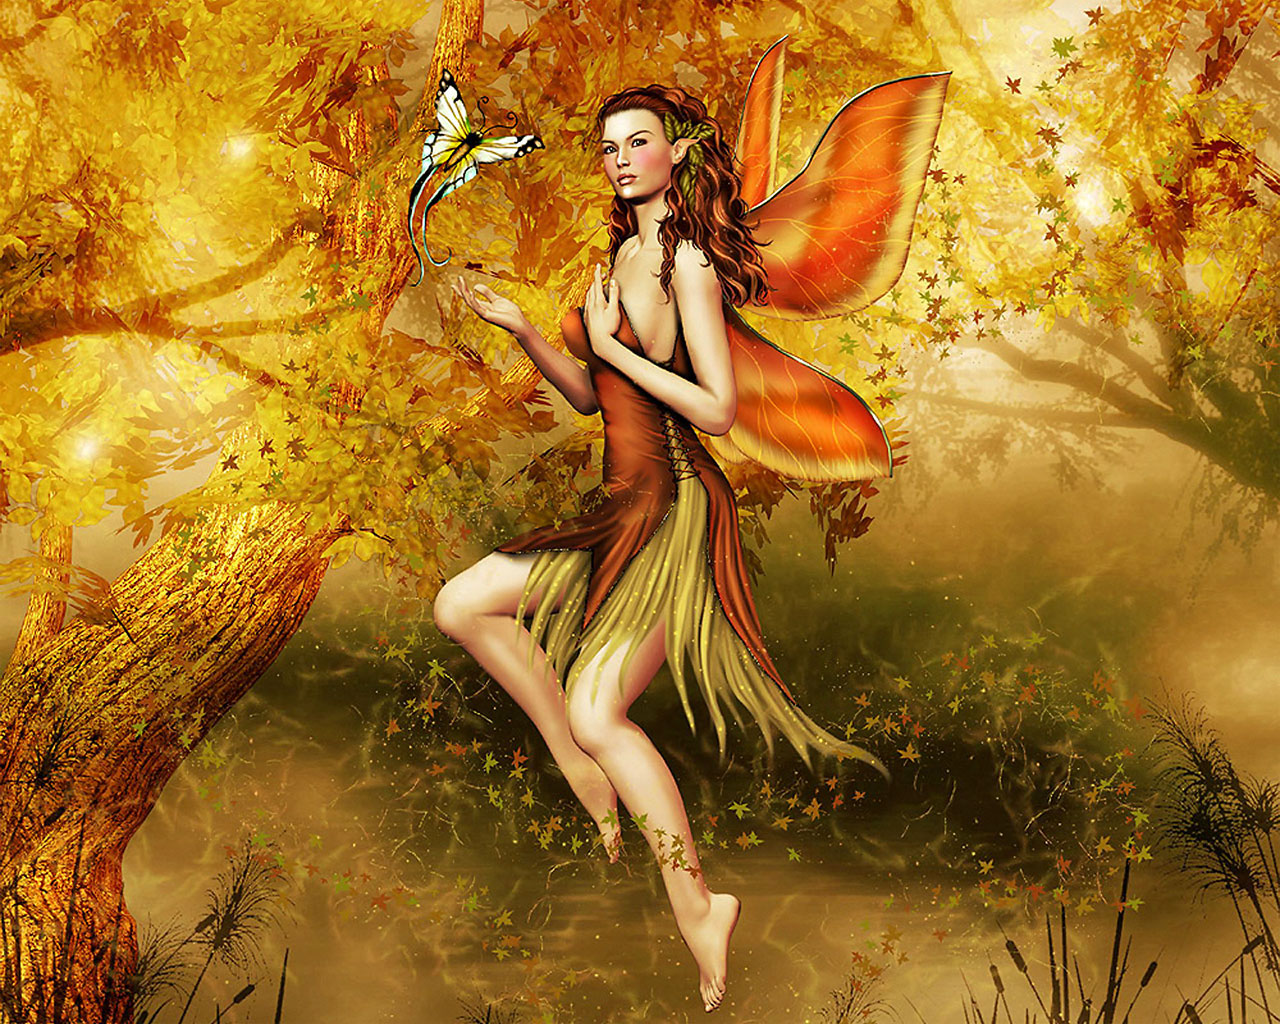 Autumn Fairy - Daydreaming Wallpaper (24950032) - Fanpop